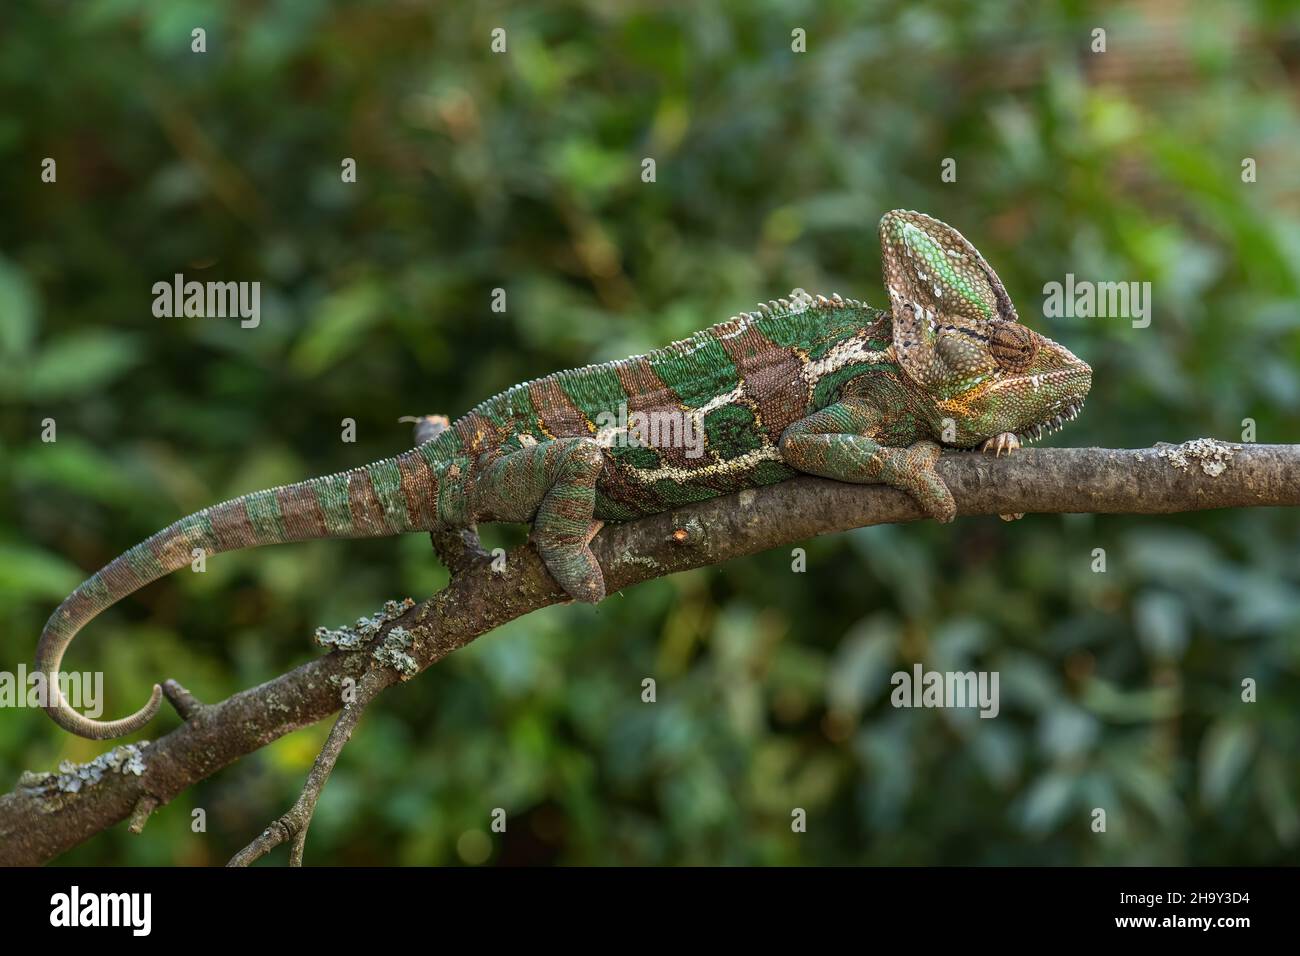 Chameleon velato - Chamaeleo calyptratus, grande lucertola colorata bella da cespugli e foreste della penisola araba, Yemen e Arabia Saudita. Foto Stock